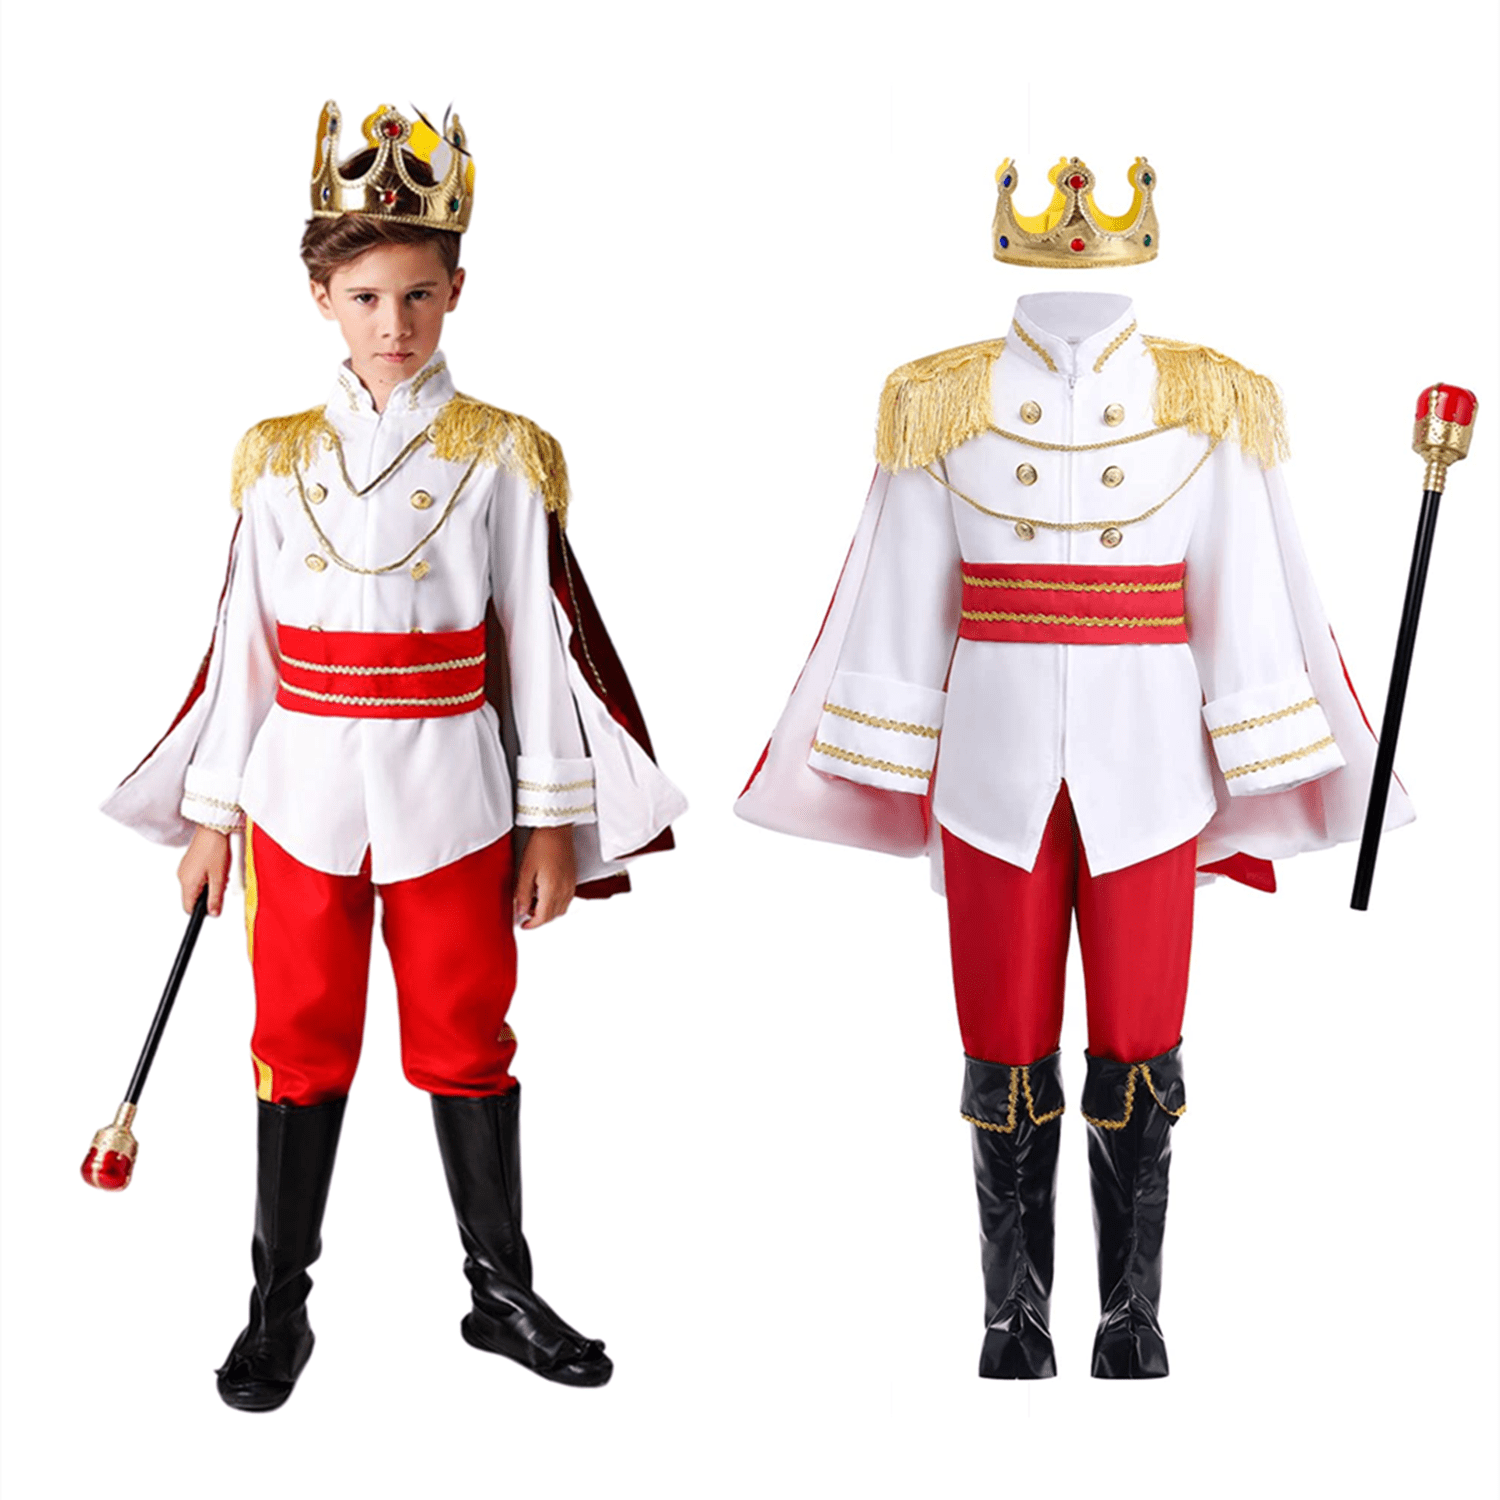 Prince Charming Costume Boys King Costume Medieval Royal Prince